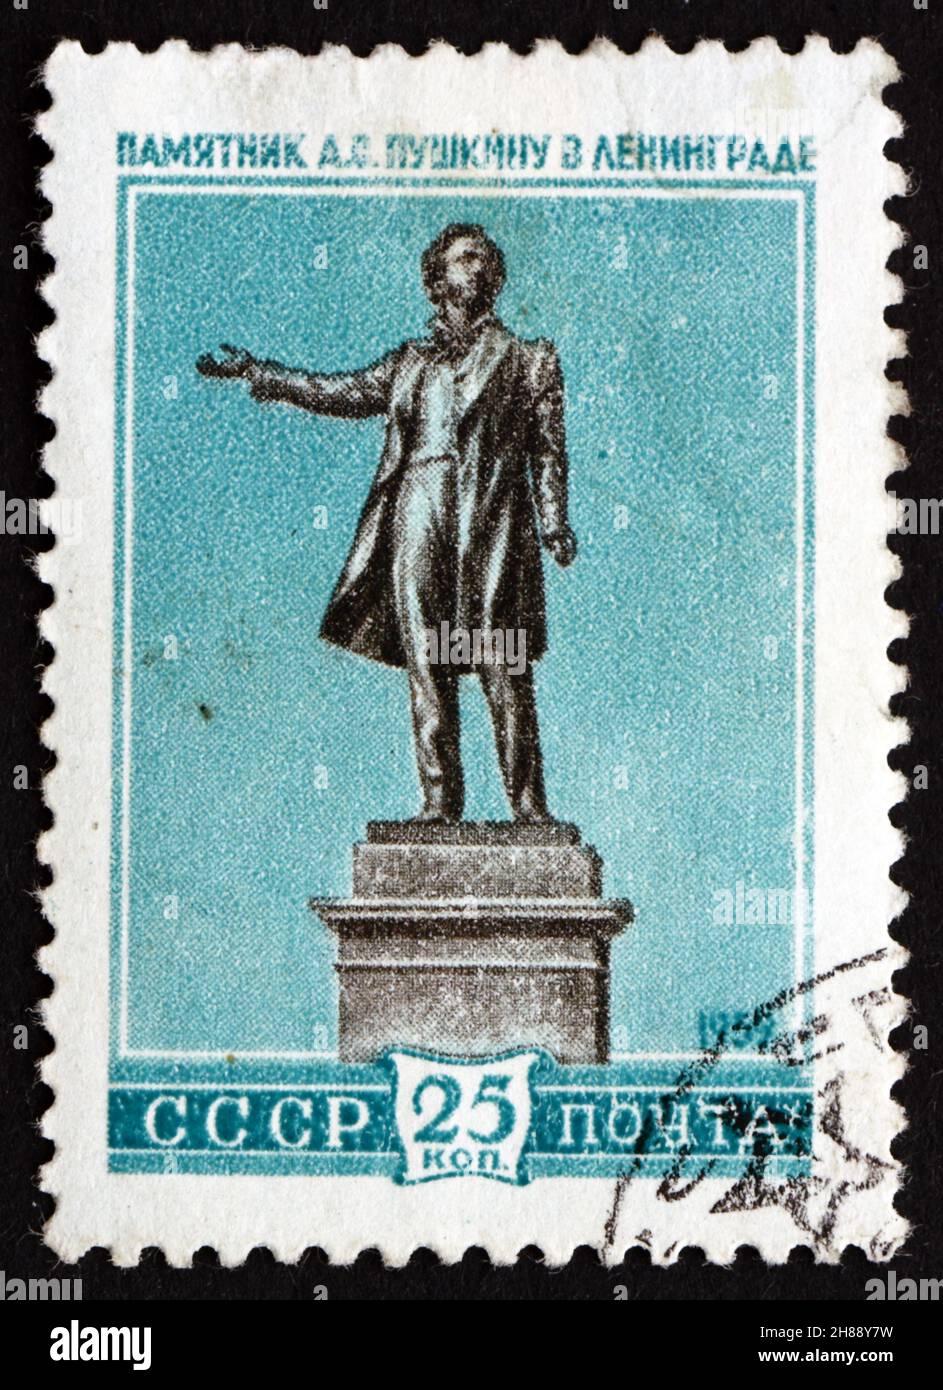 RUSSIE - VERS 1959 : un timbre imprimé en Russie montre la statue d'Alexandre Sergueïevitch Pouchkine, auteur et poète russe, Leningrad, vers 1959 Banque D'Images